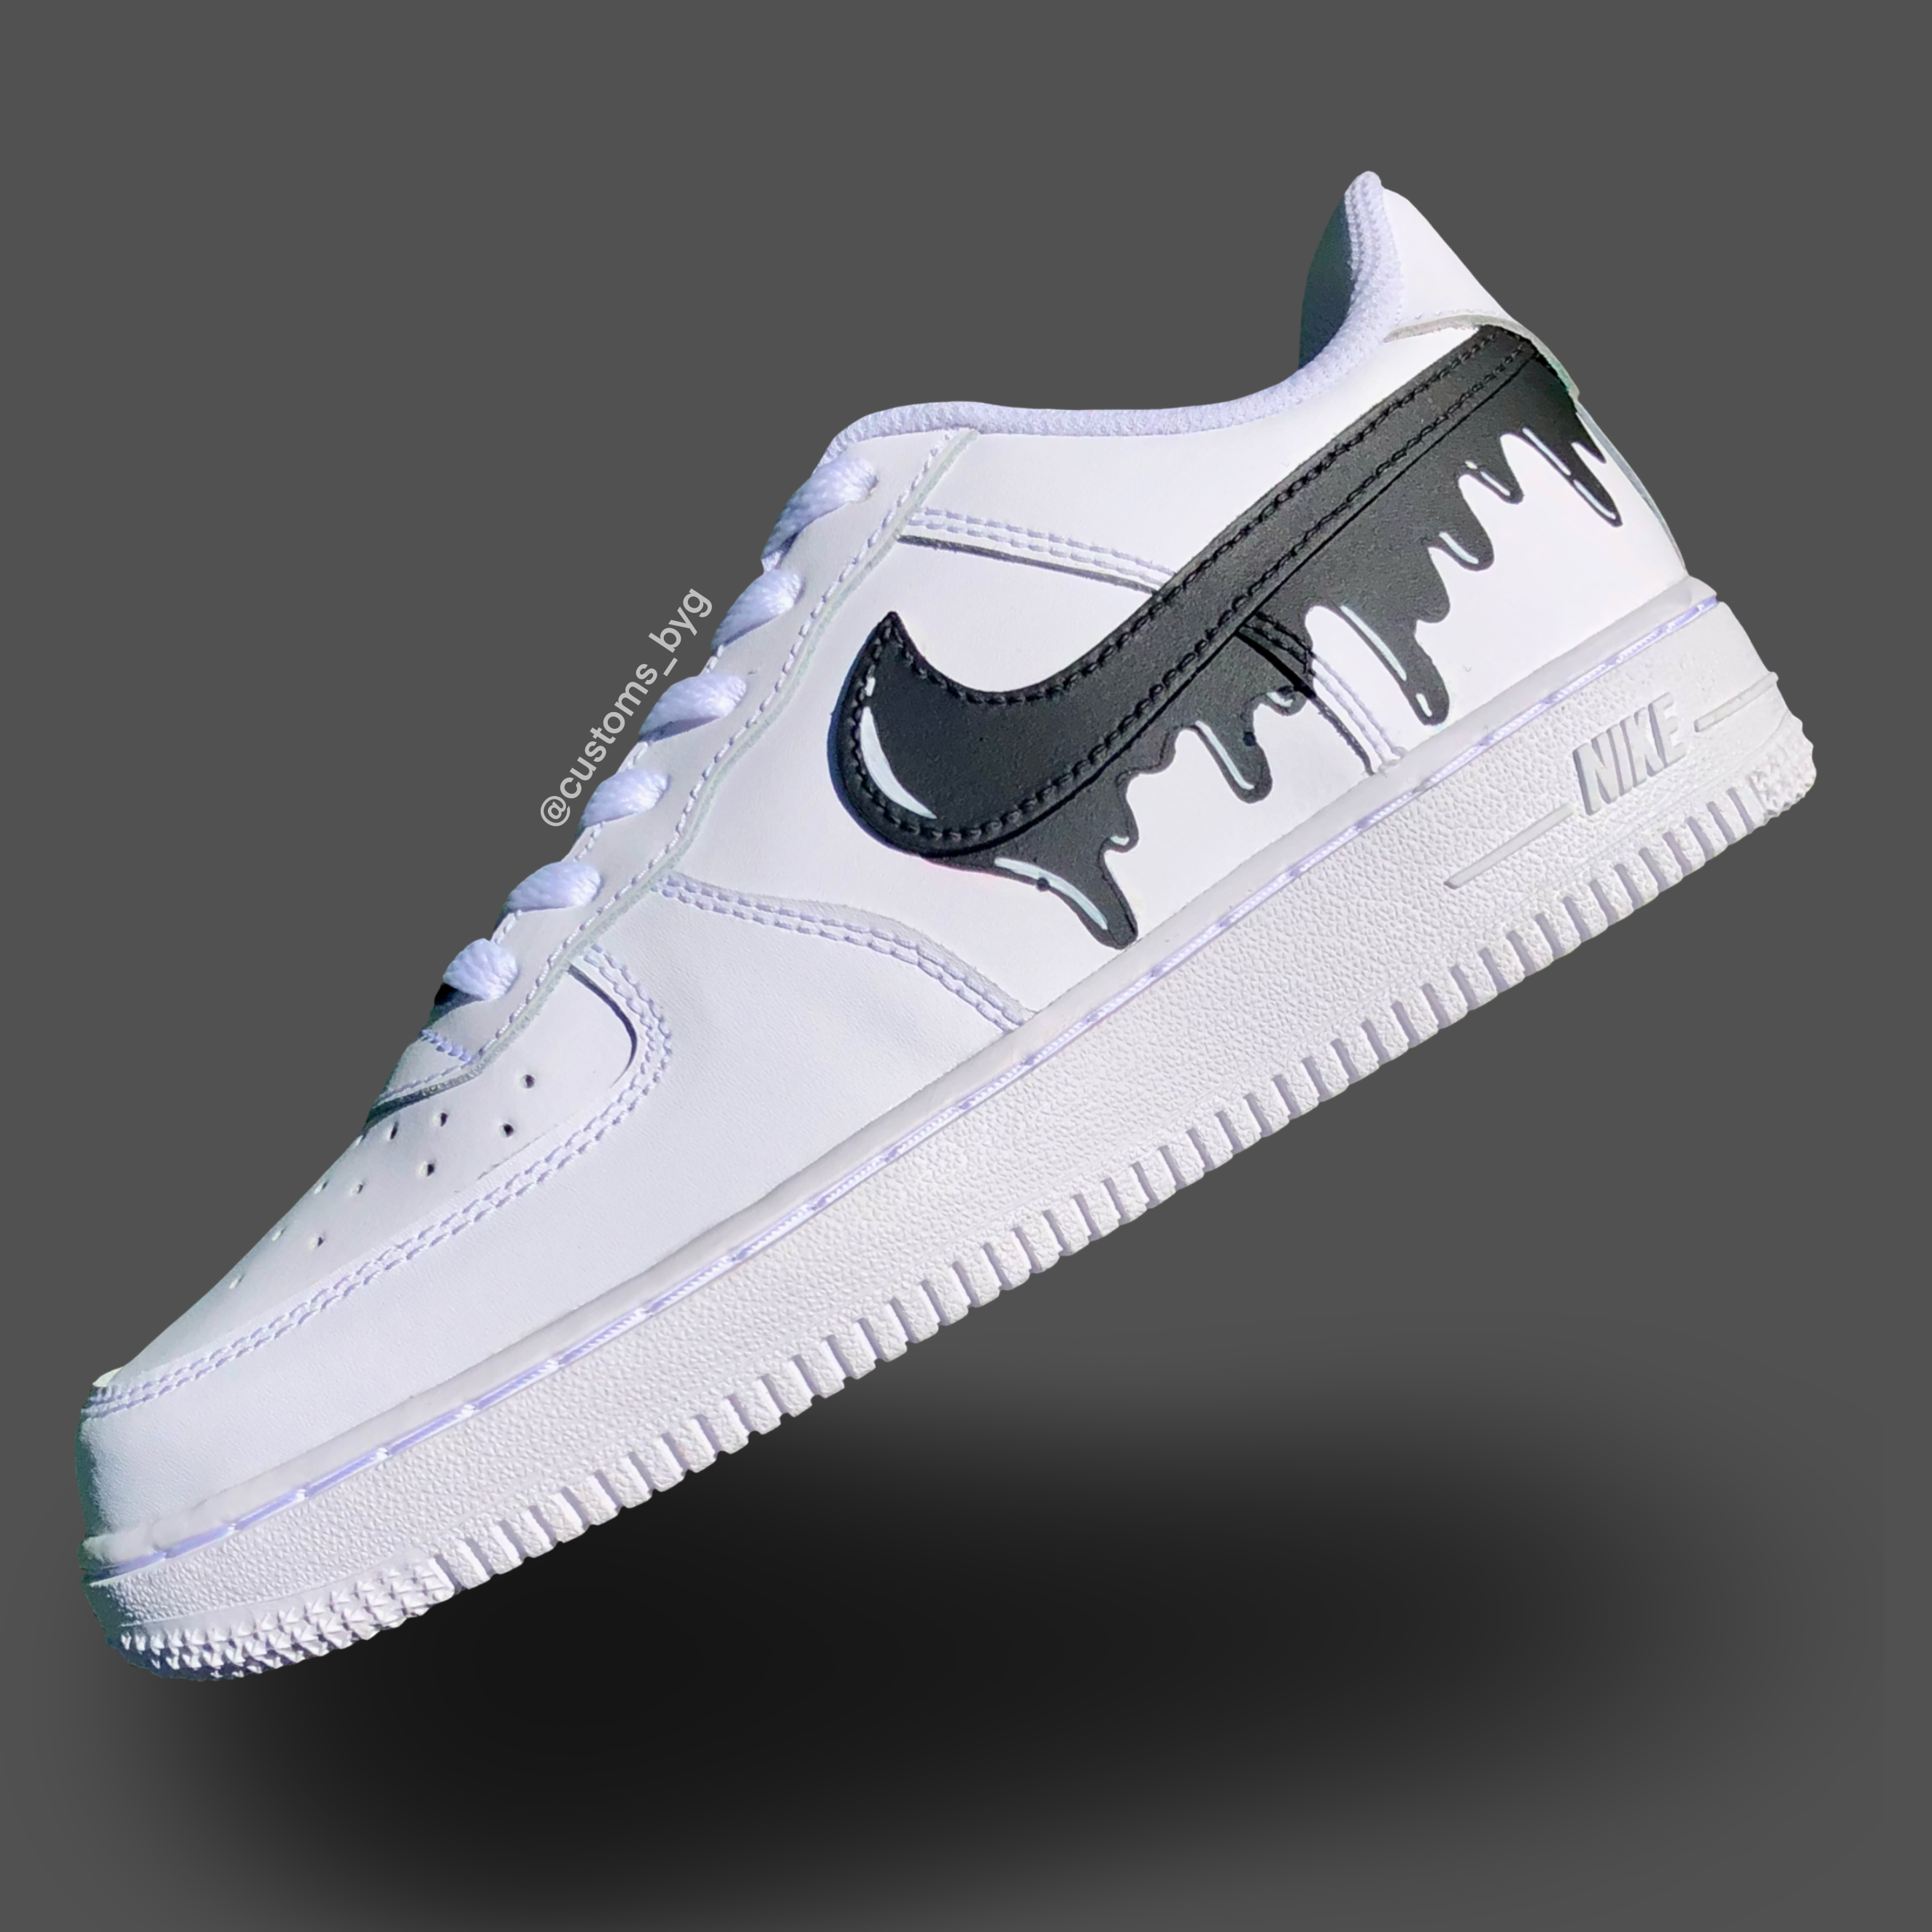 Drippy  Custom Nike sneakers & more